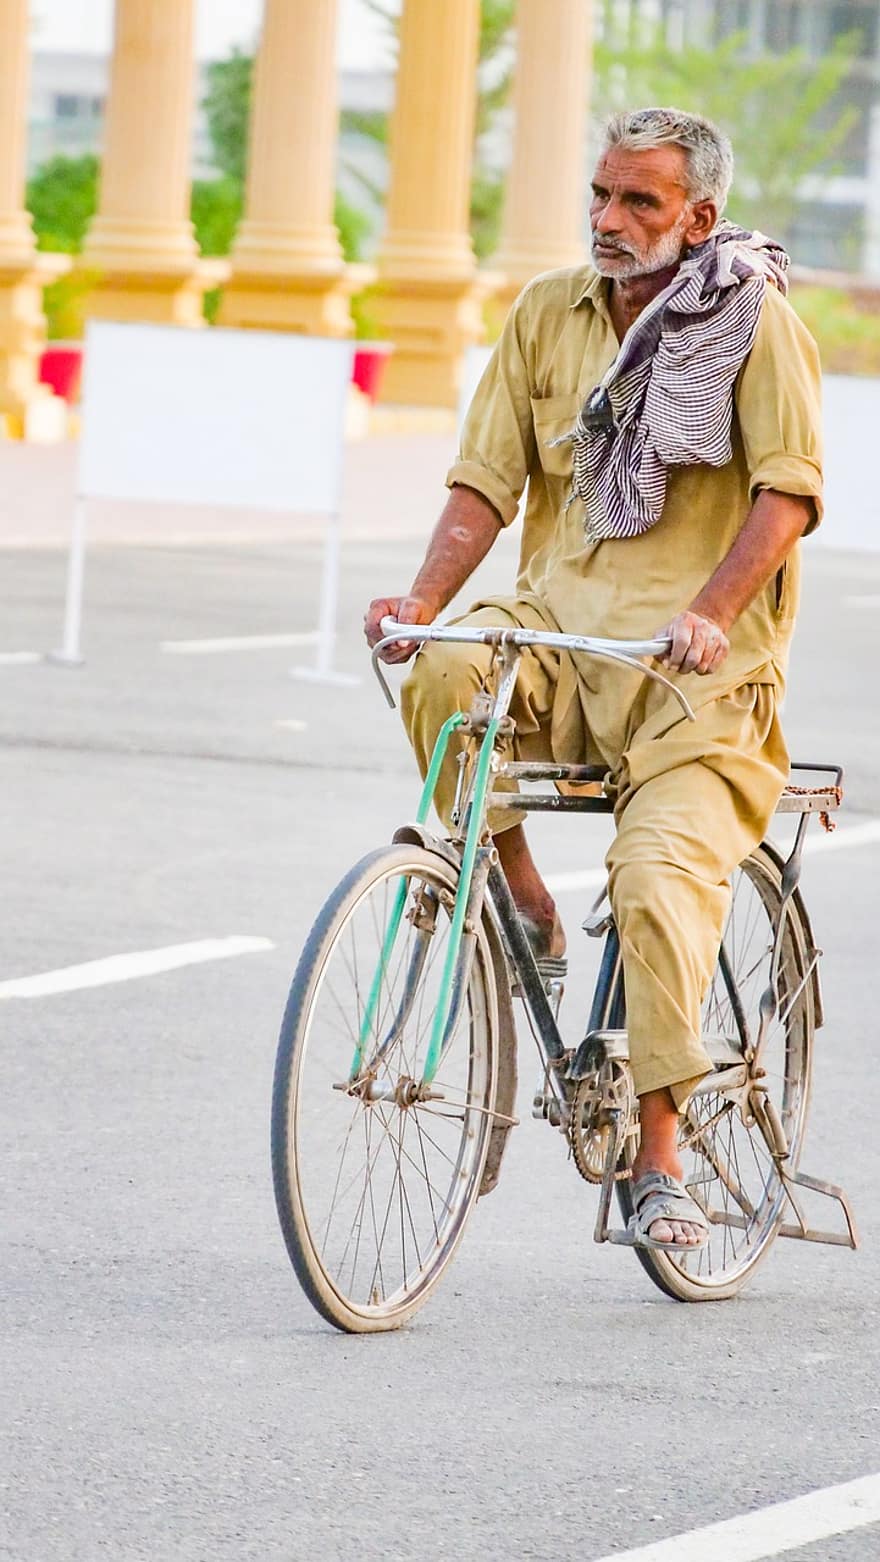 gammel mann, eldre, sykkel, mann på sykkel